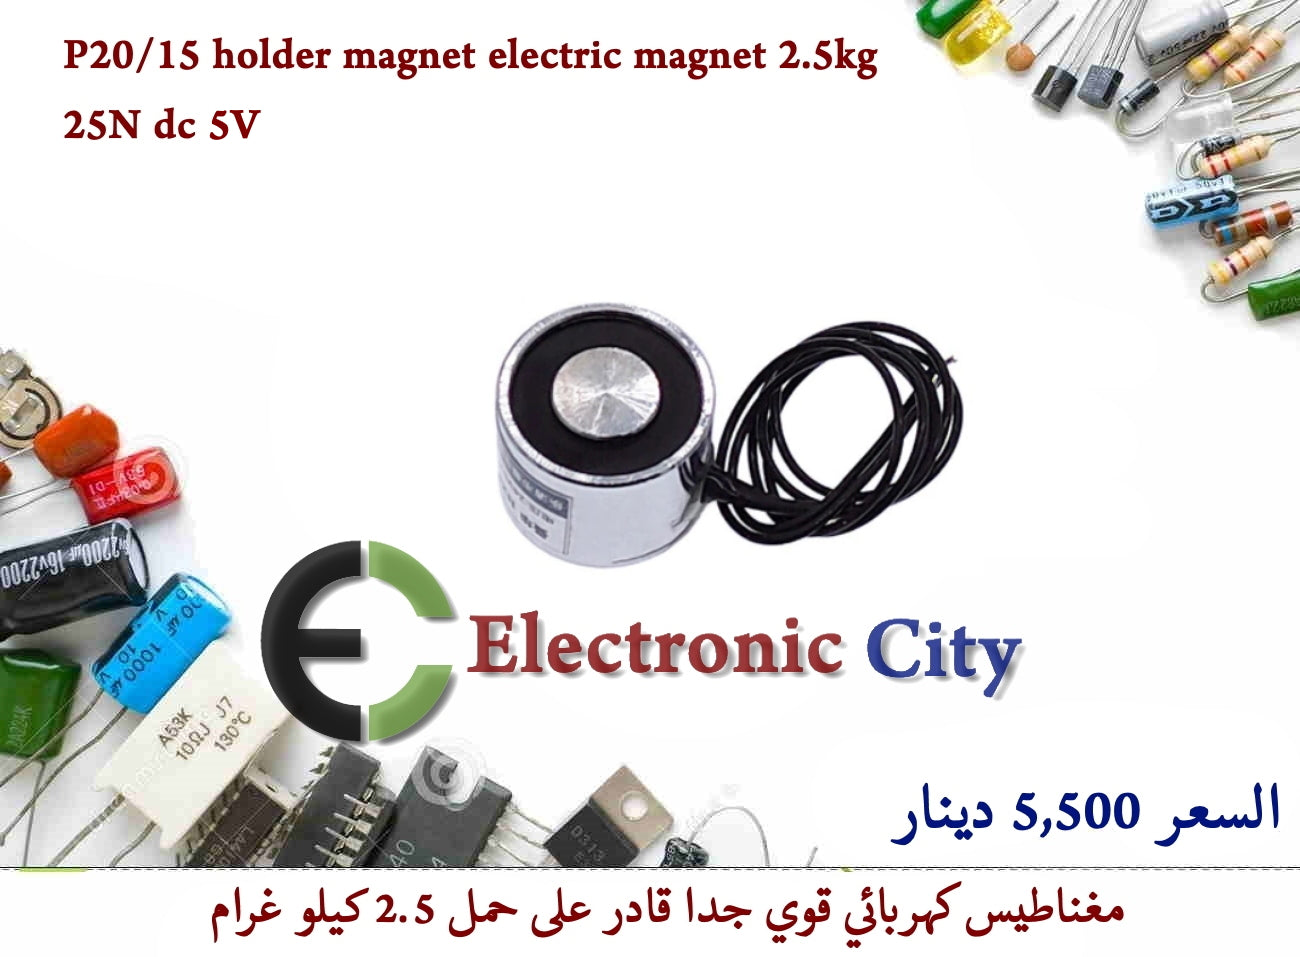 P20-15 holder magnet electric magnet 2.5kg lift 25N dc 5v